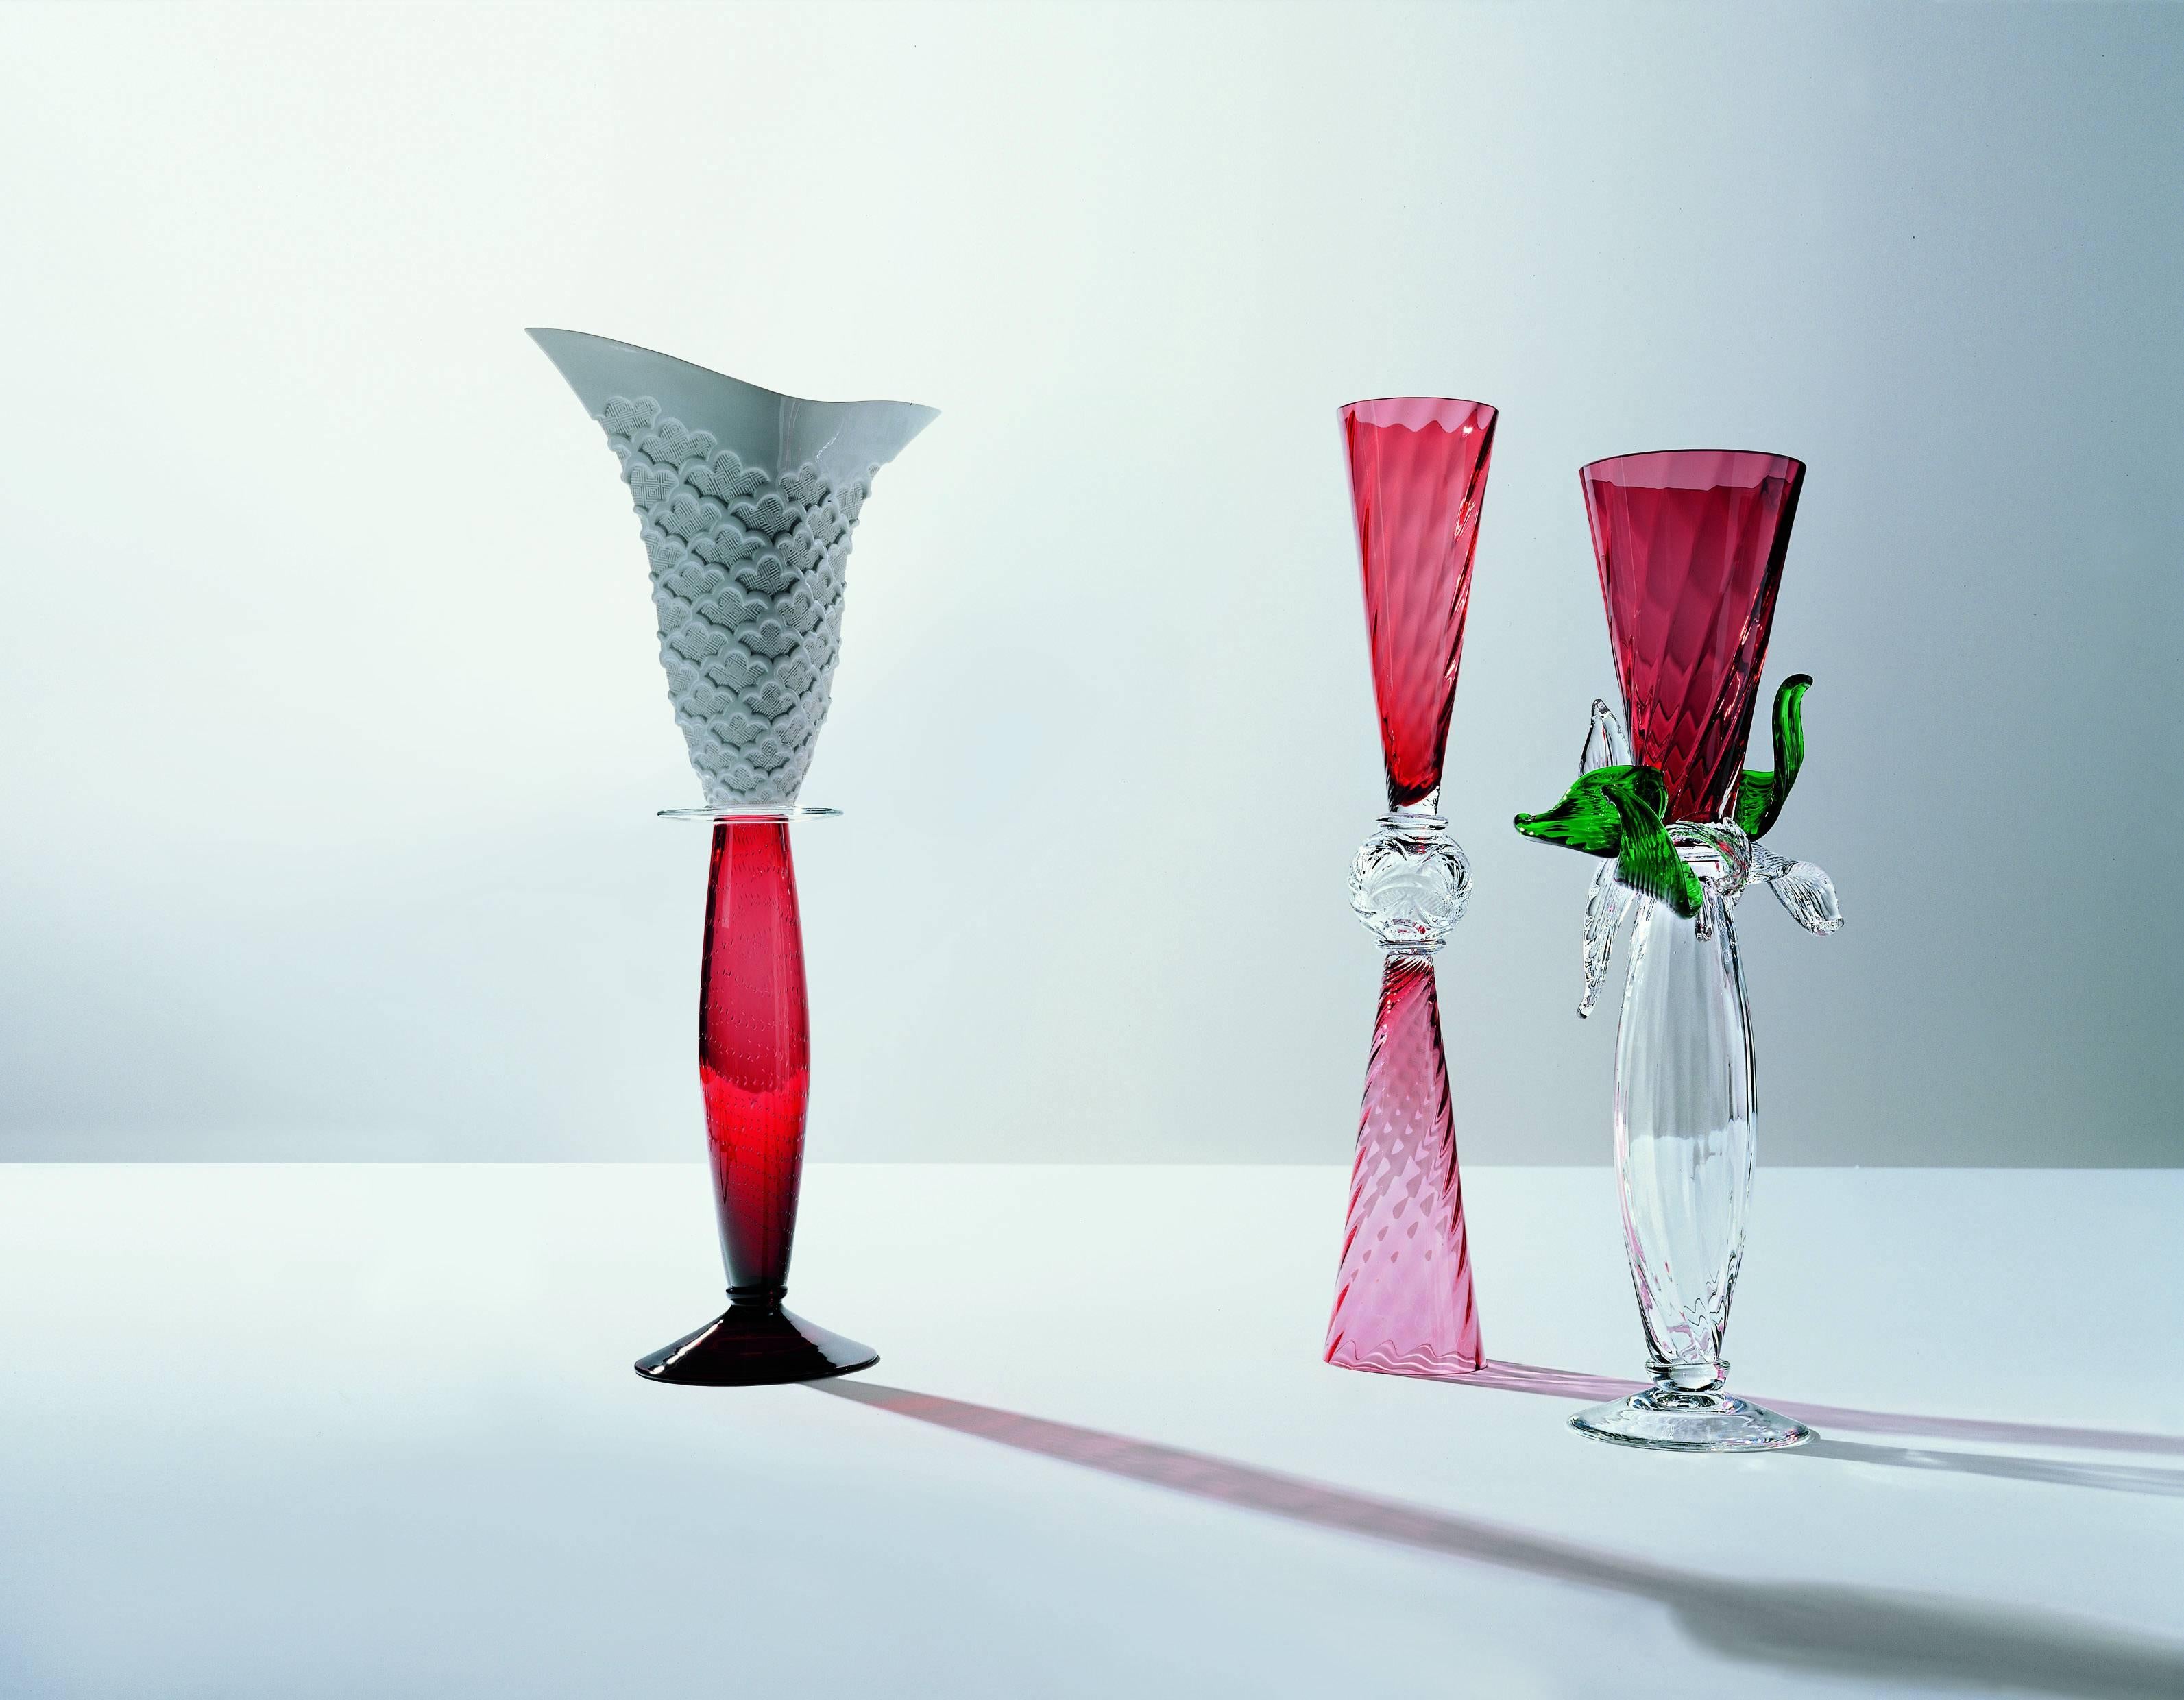 Perigot est un vase en verre soufflé rouge corail qui se caractérise par des lignes élégantes et une forme parfaitement symétrique.

Borek Sipek (1949-2016) a étudié la décoration intérieure à l'école des arts et métiers de Prague de 1964 à 1968. Il